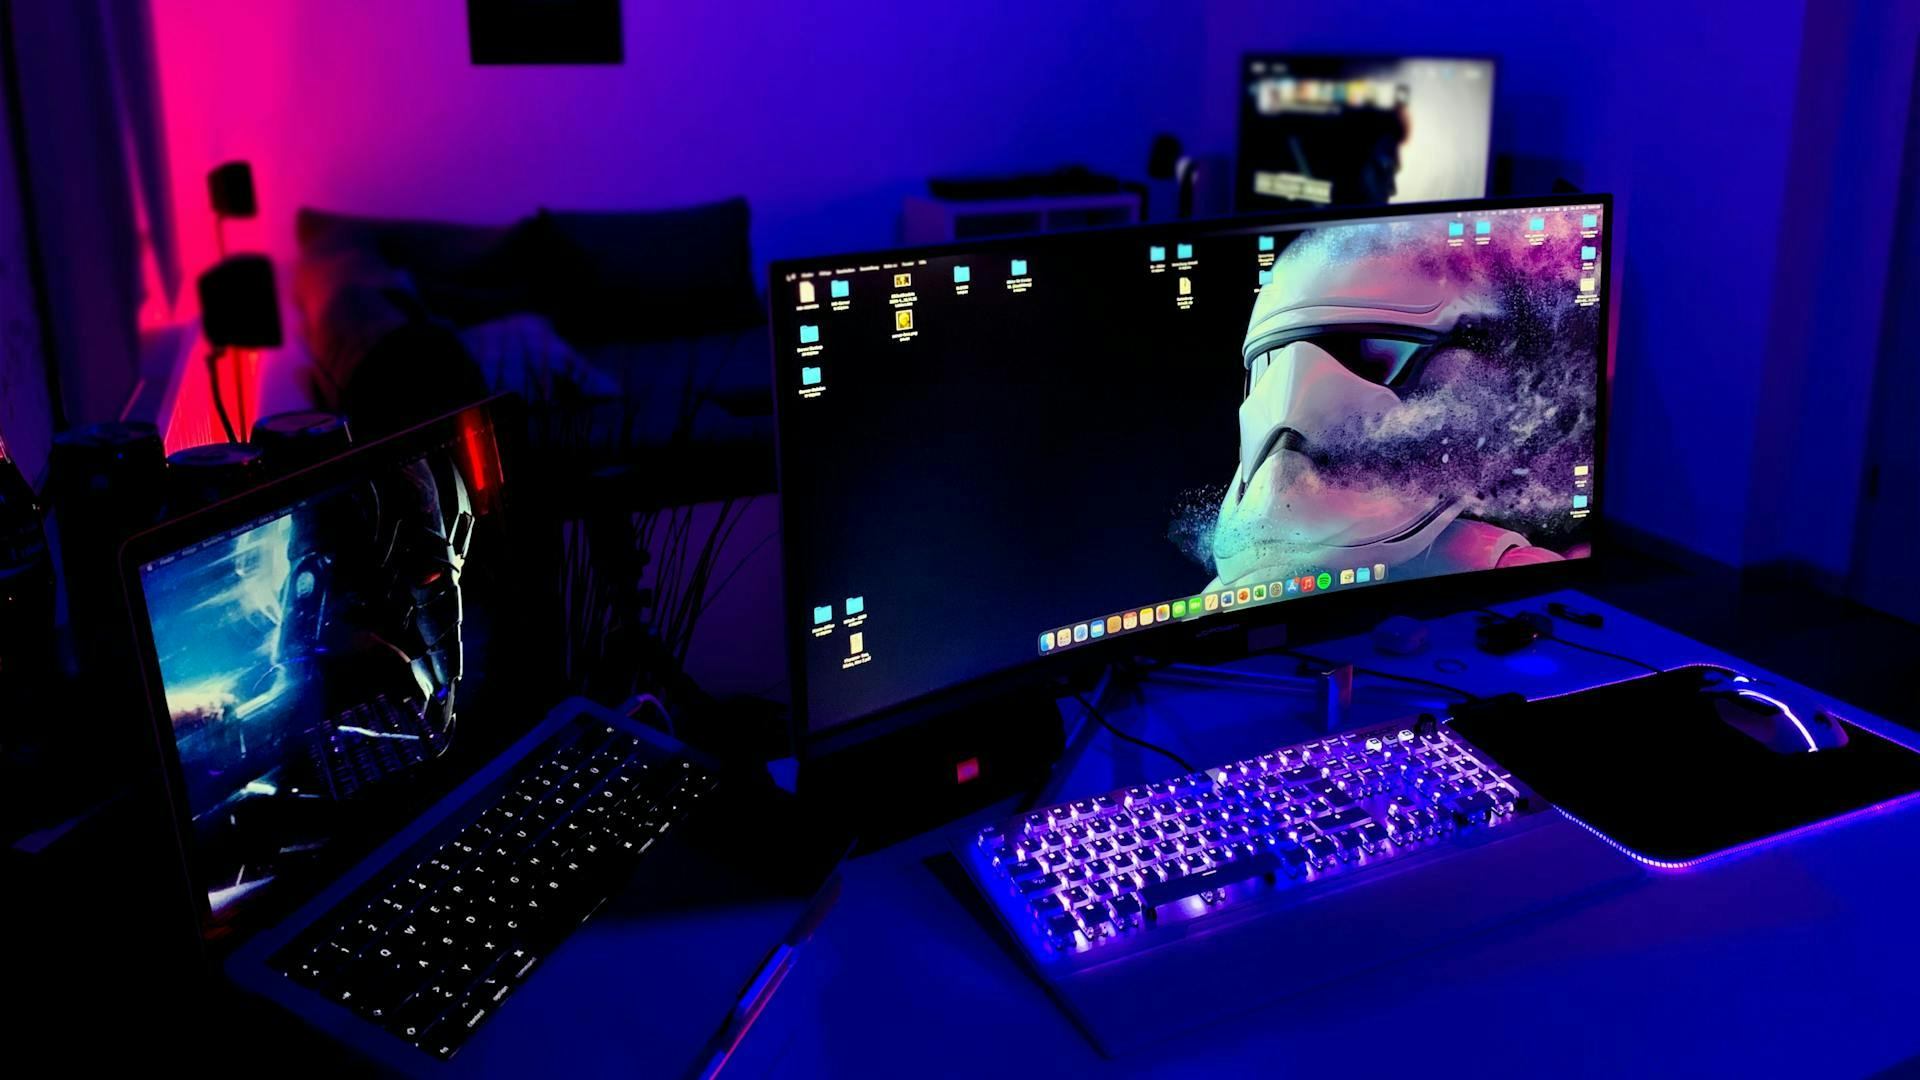 Many gaming LED elements in one setup with LED keyboard, LED mouse and background LED lighting 